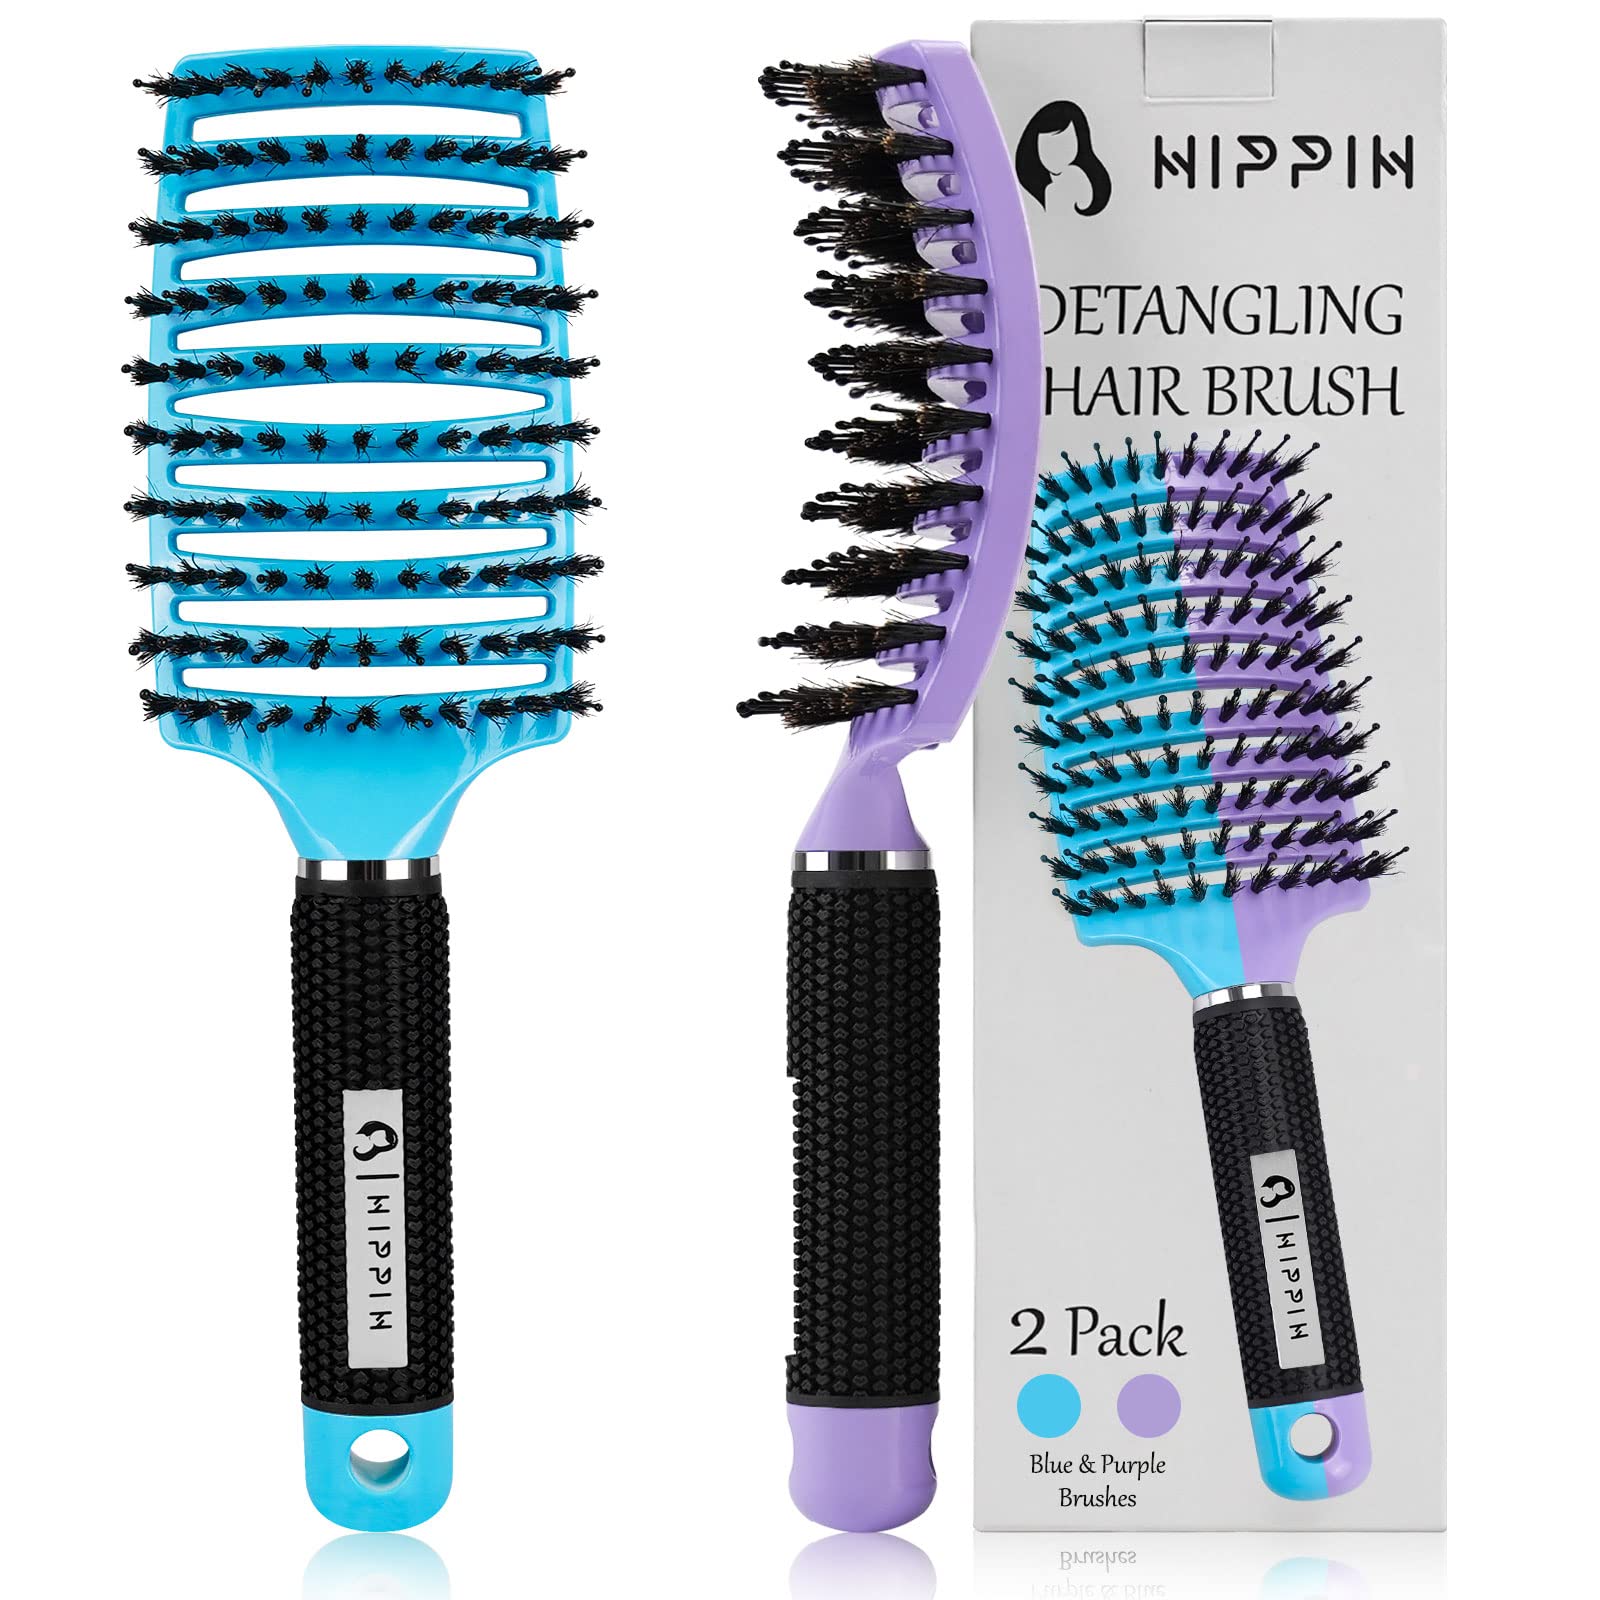 Hair Brush Detangling Curved Vented Hair Brushes For Women Men Wet